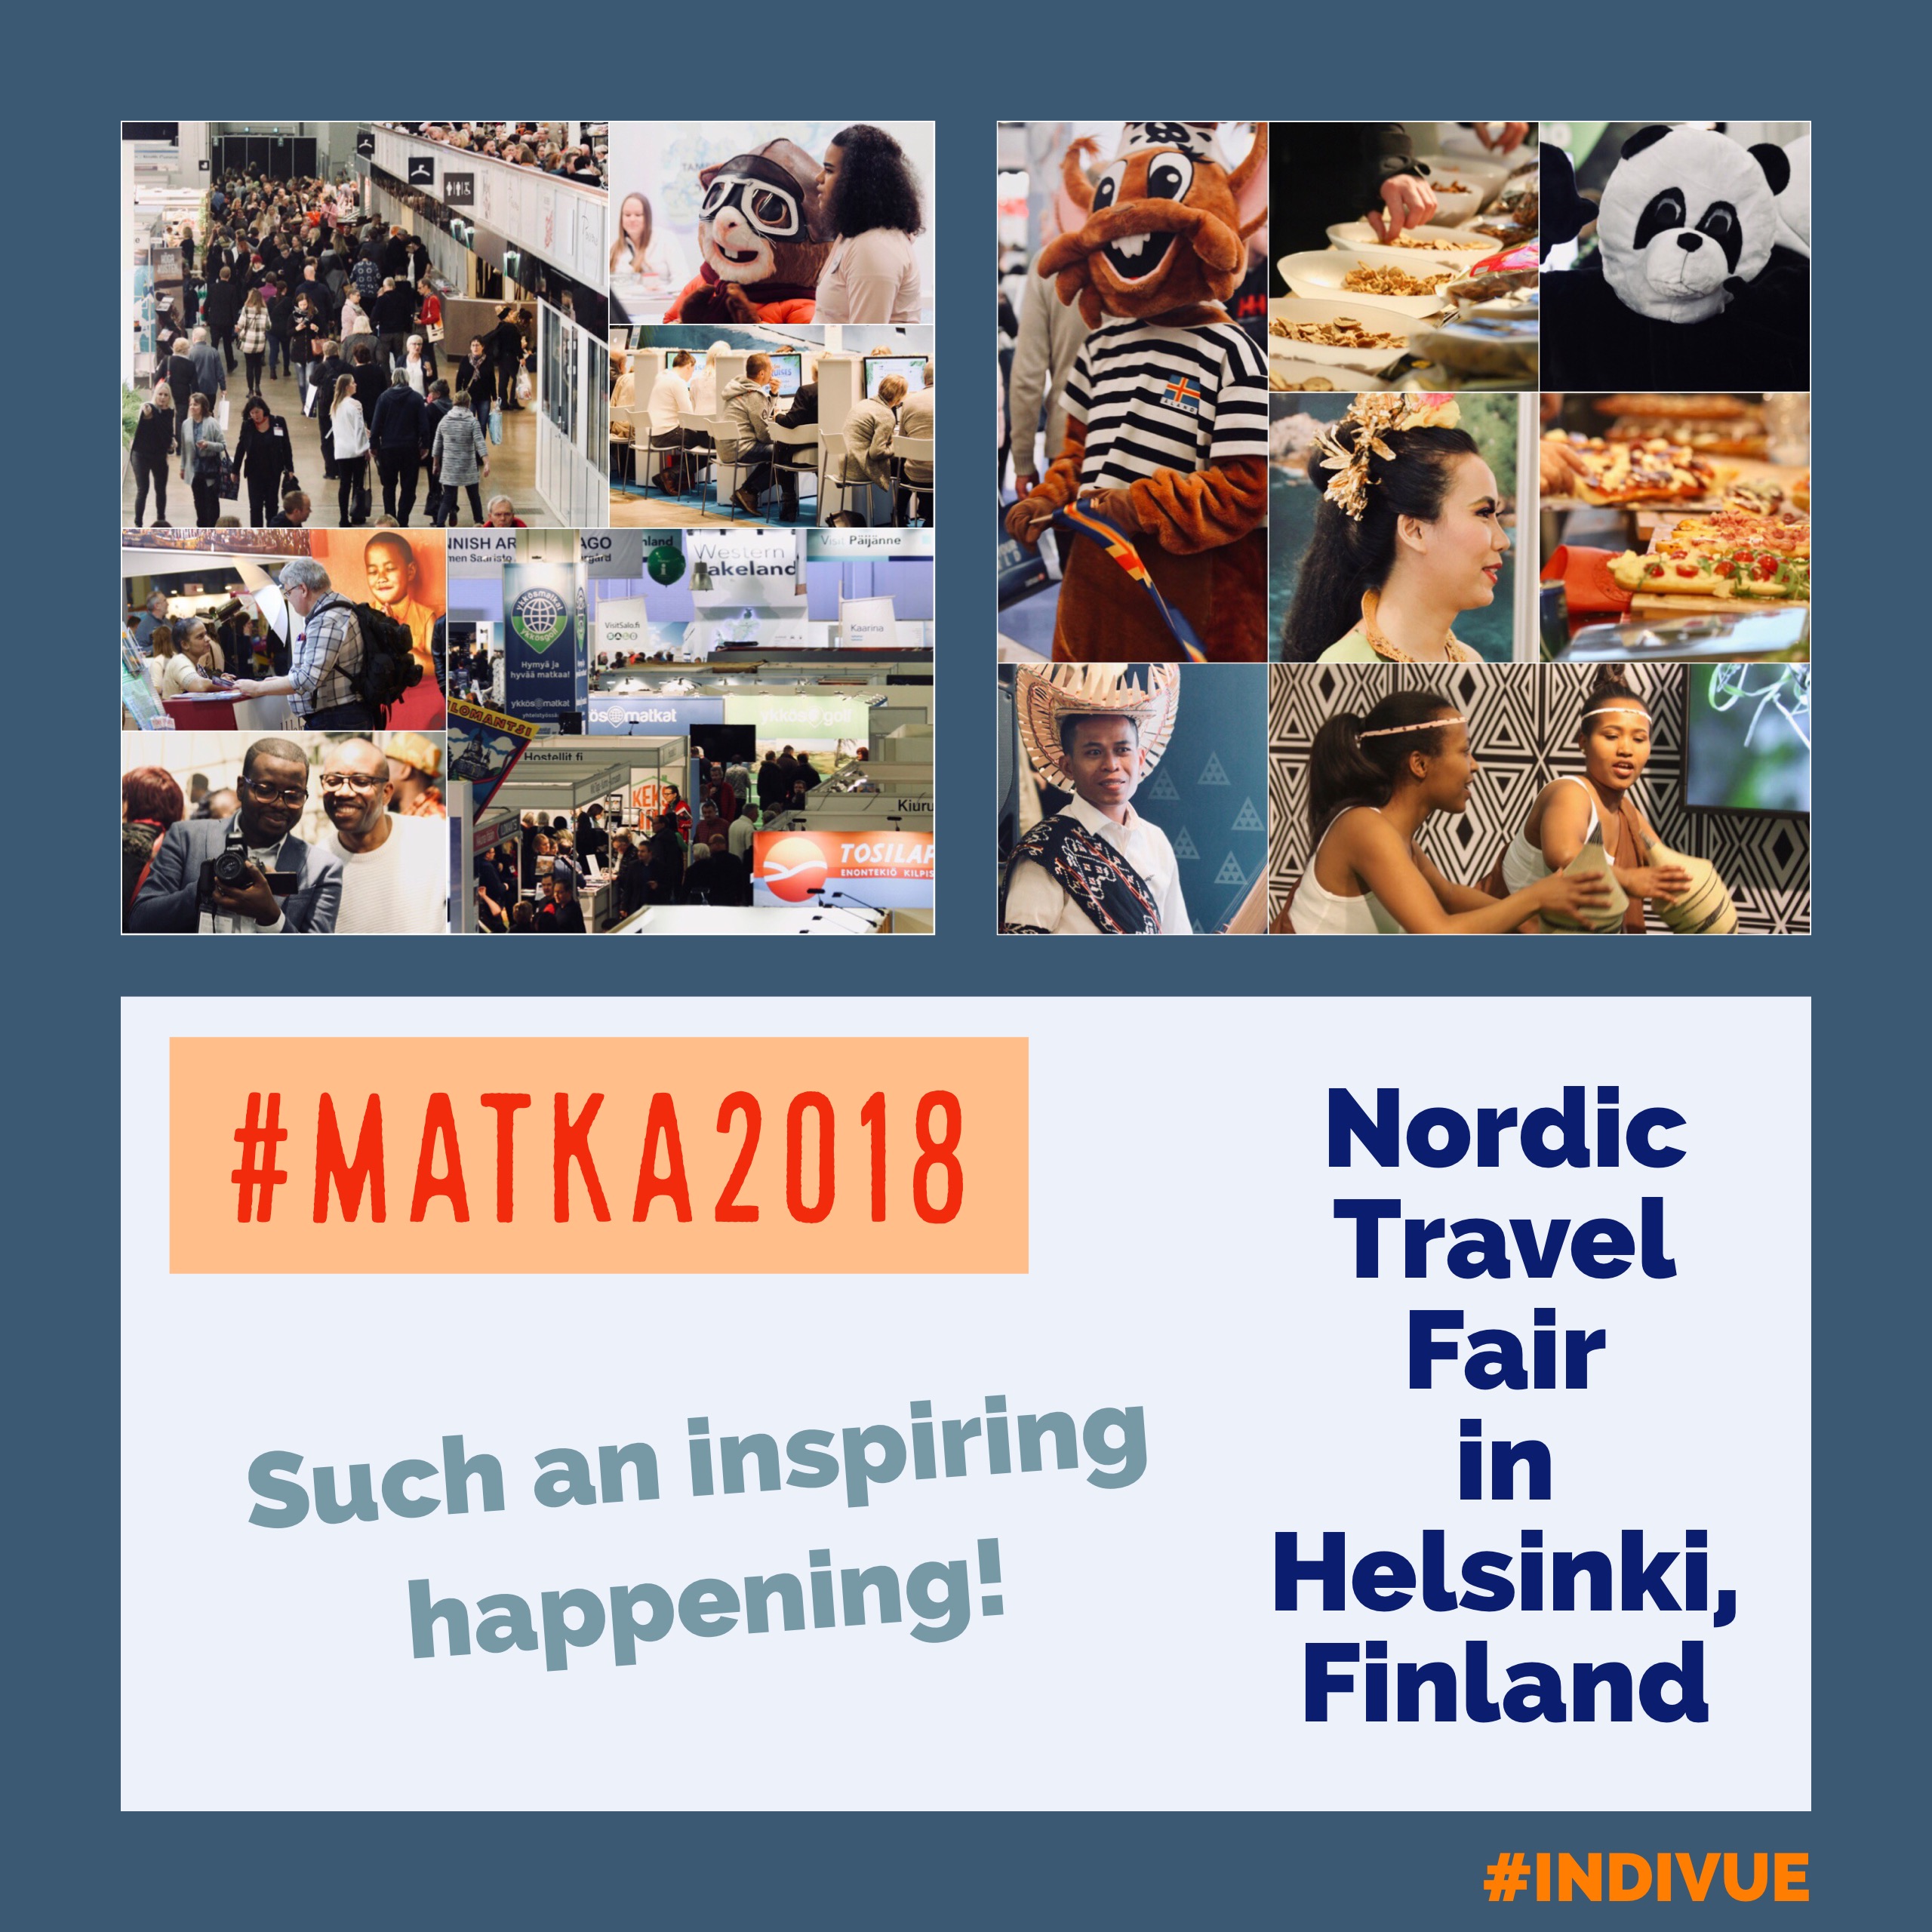 Nordic Travel Fair in Helsinki, Finland in 2018